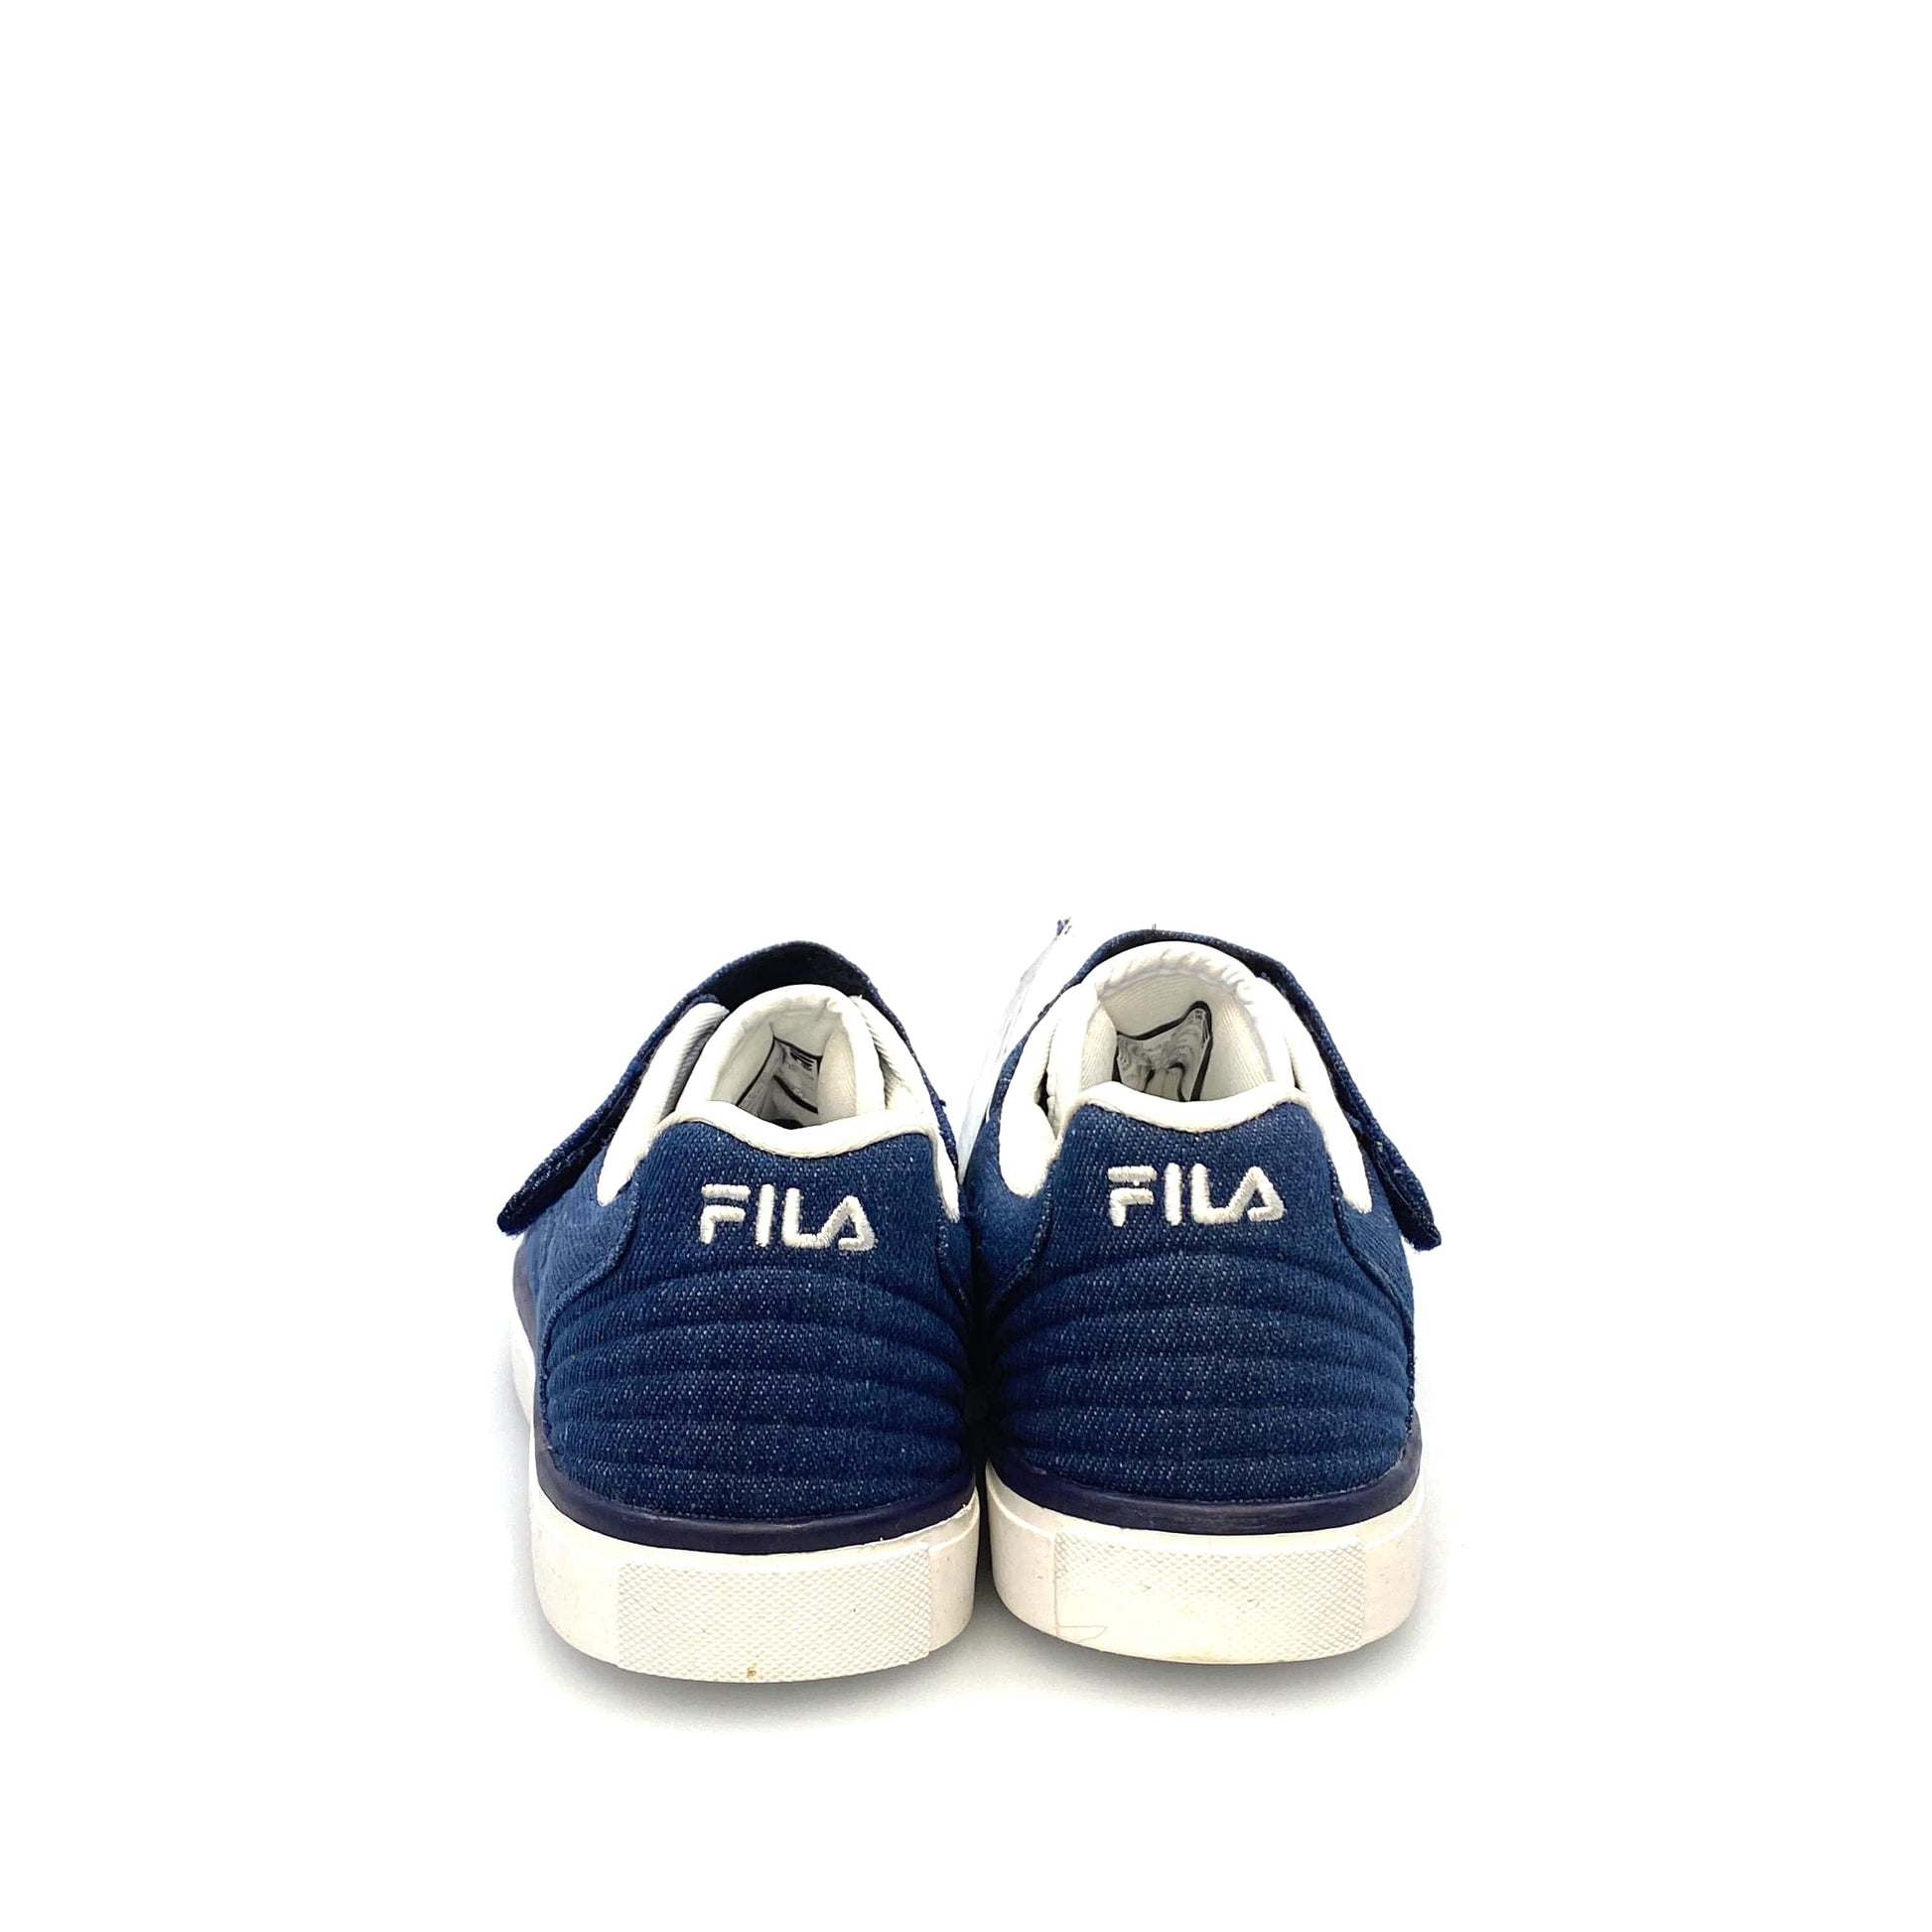 FILA - Kids Slips